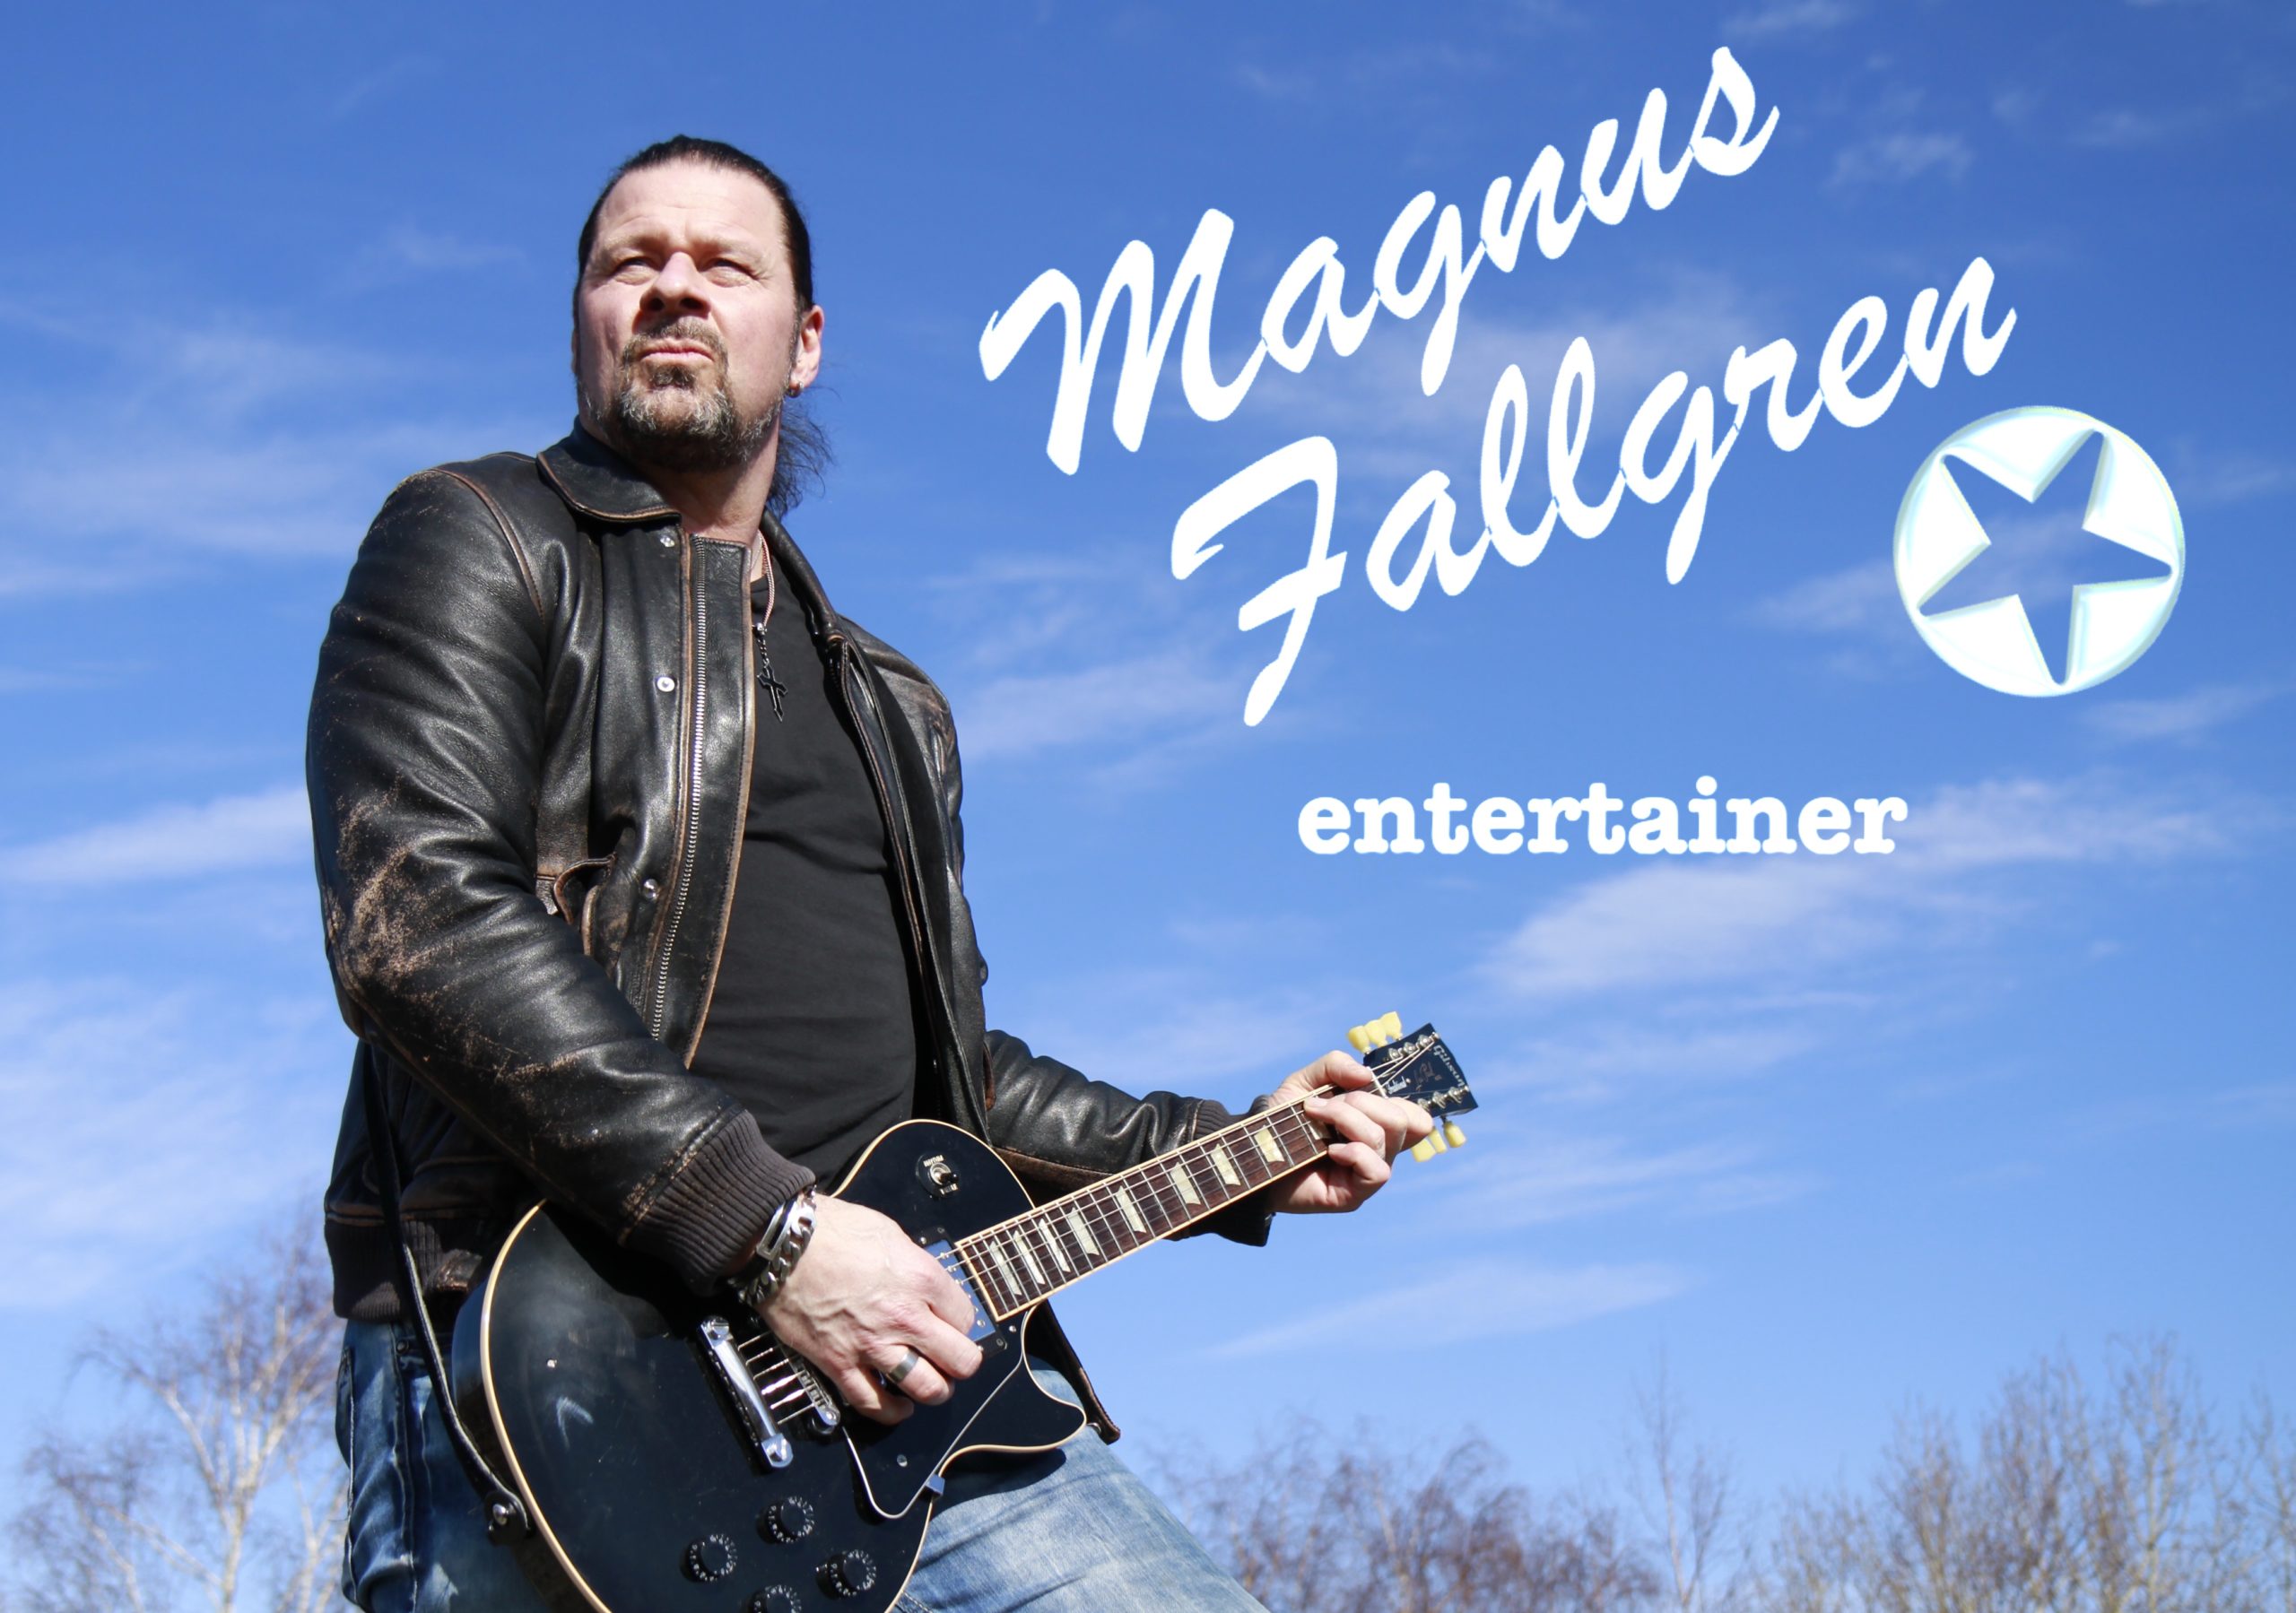 MagnusFallgren trubadur enmansband 2 scaled - Han har som målsättning att inte spela dom mest uttjatade låtarna, utan bjuda publiken på något som dom kanske inte förväntar sig.